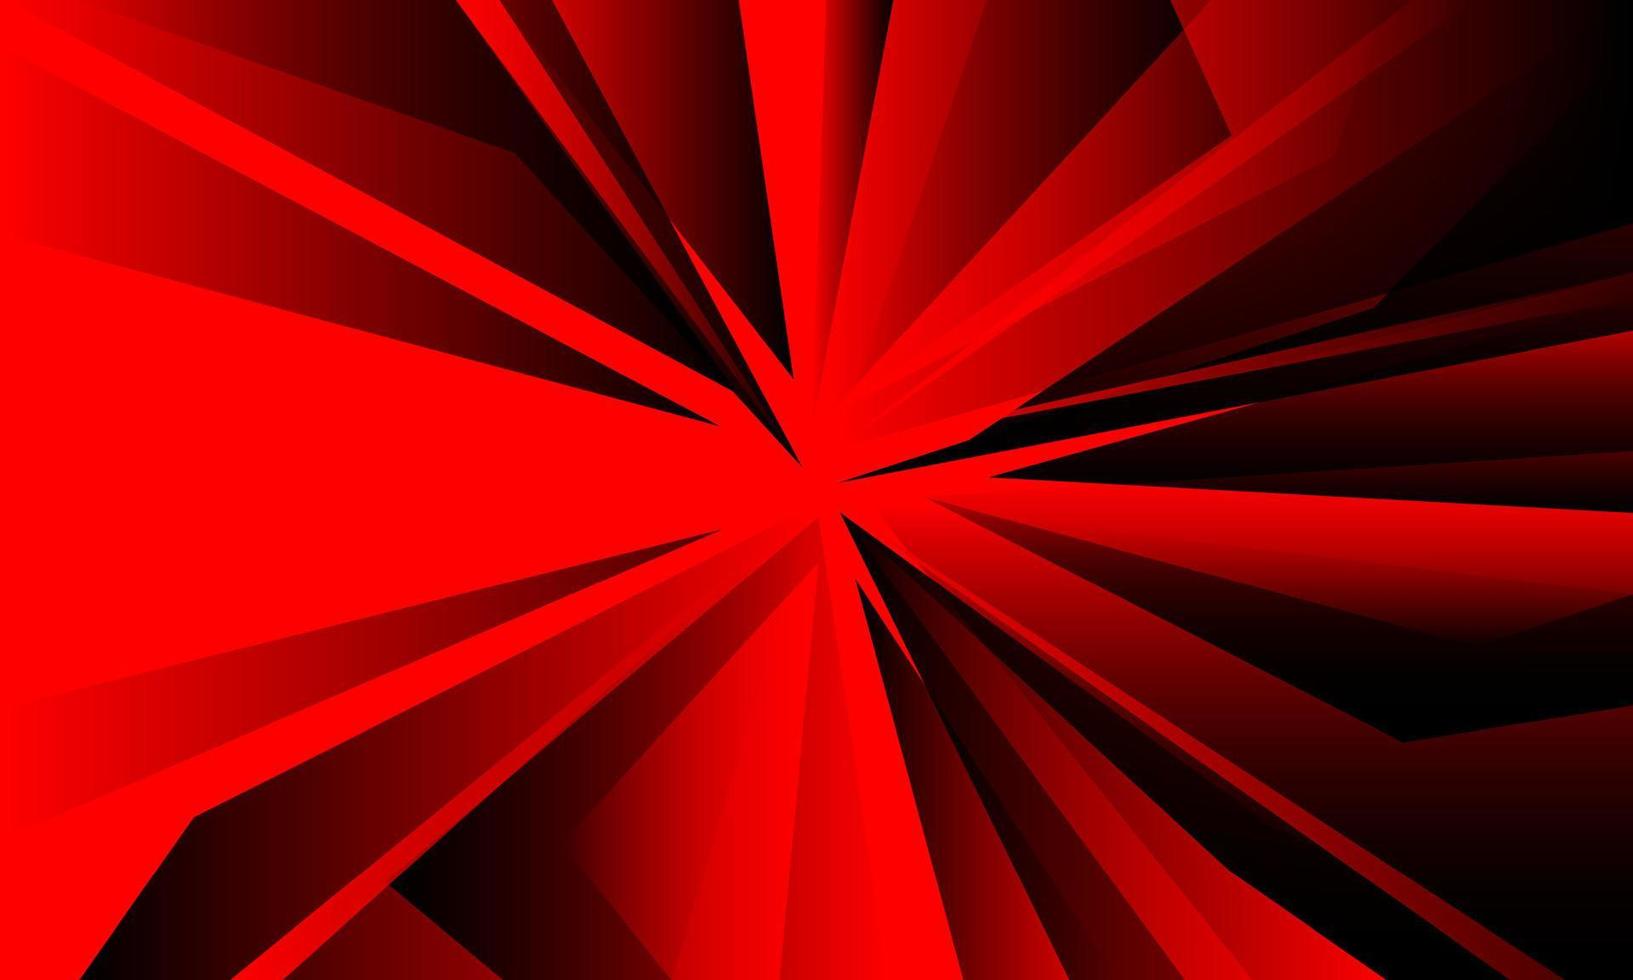 abstrait rouge noir polygone design géométrique luxe moderne vecteur de fond